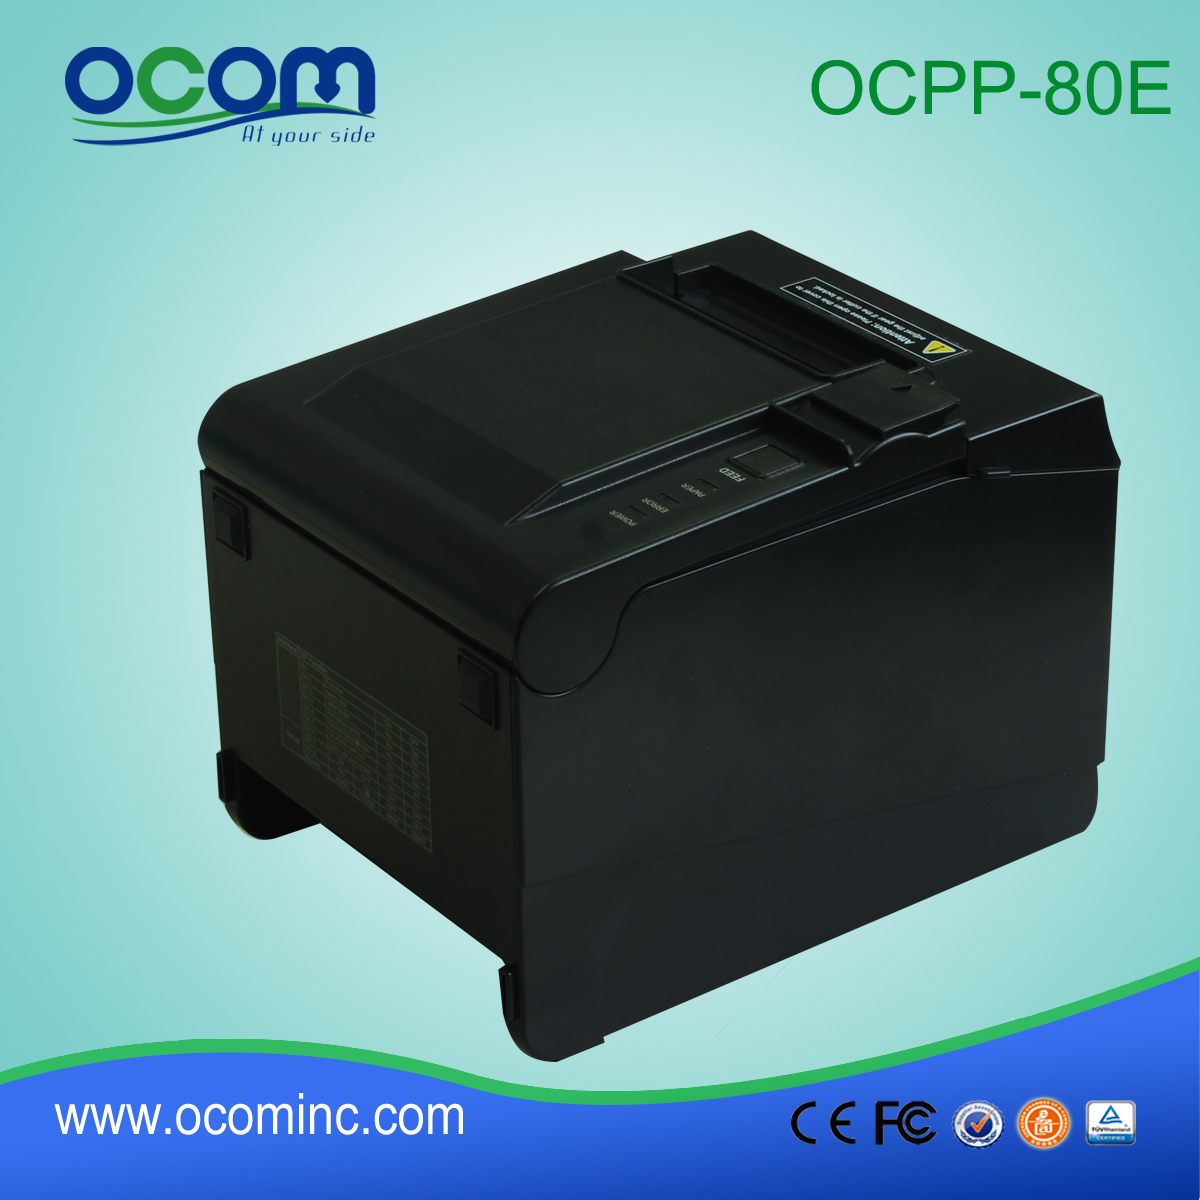 OCPP-80E ---- Chiny wykonane 80mm drukarki paragonów POS